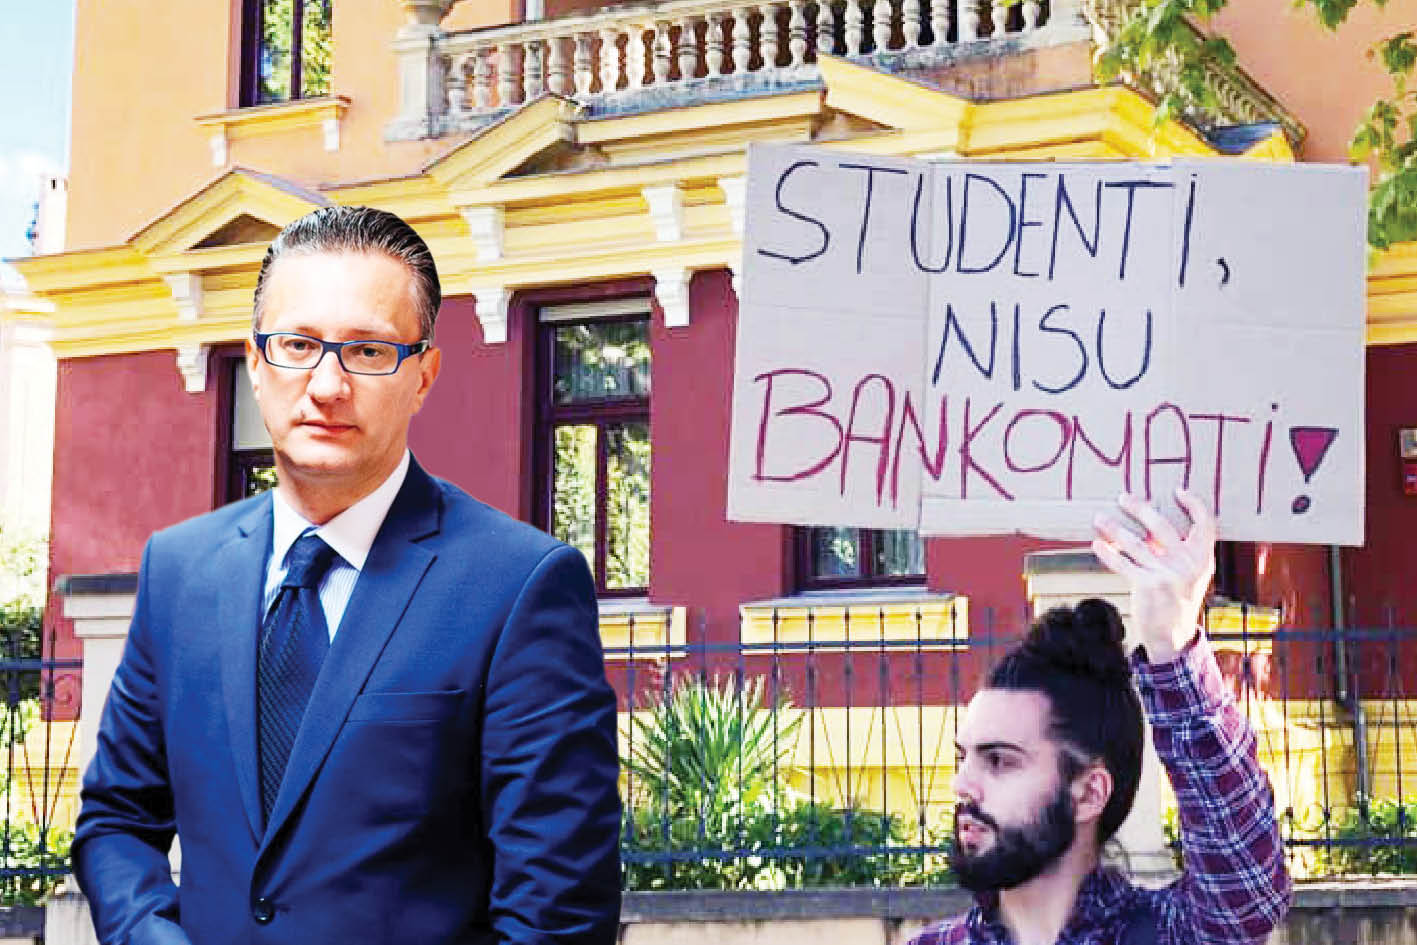 Rektorat odgovorio da je prosvjed politički motiviran, a studenti već najavljuju novi